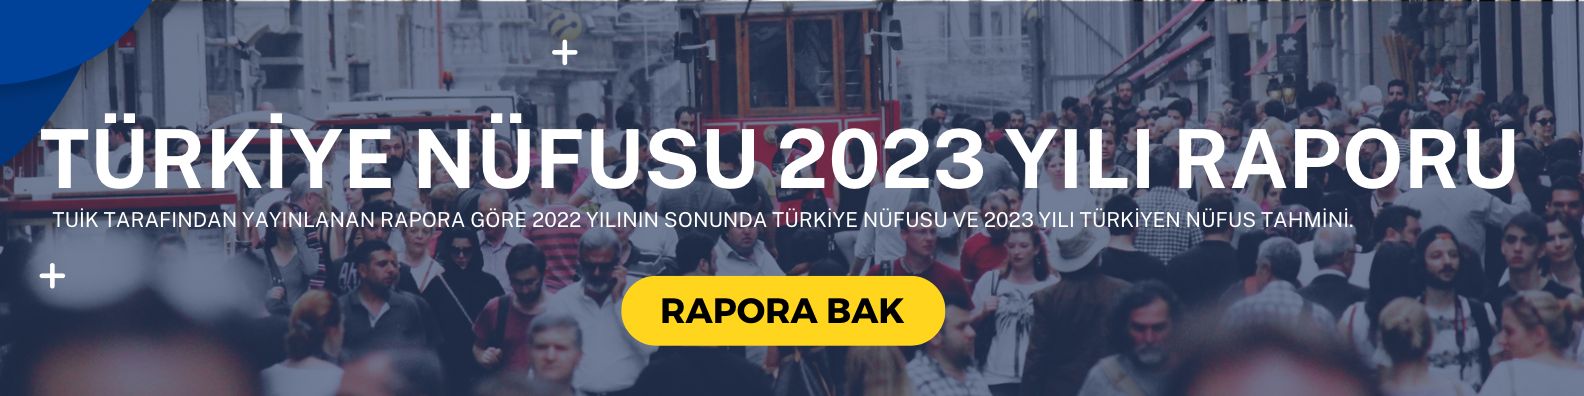 türkiye nüfusu 2023